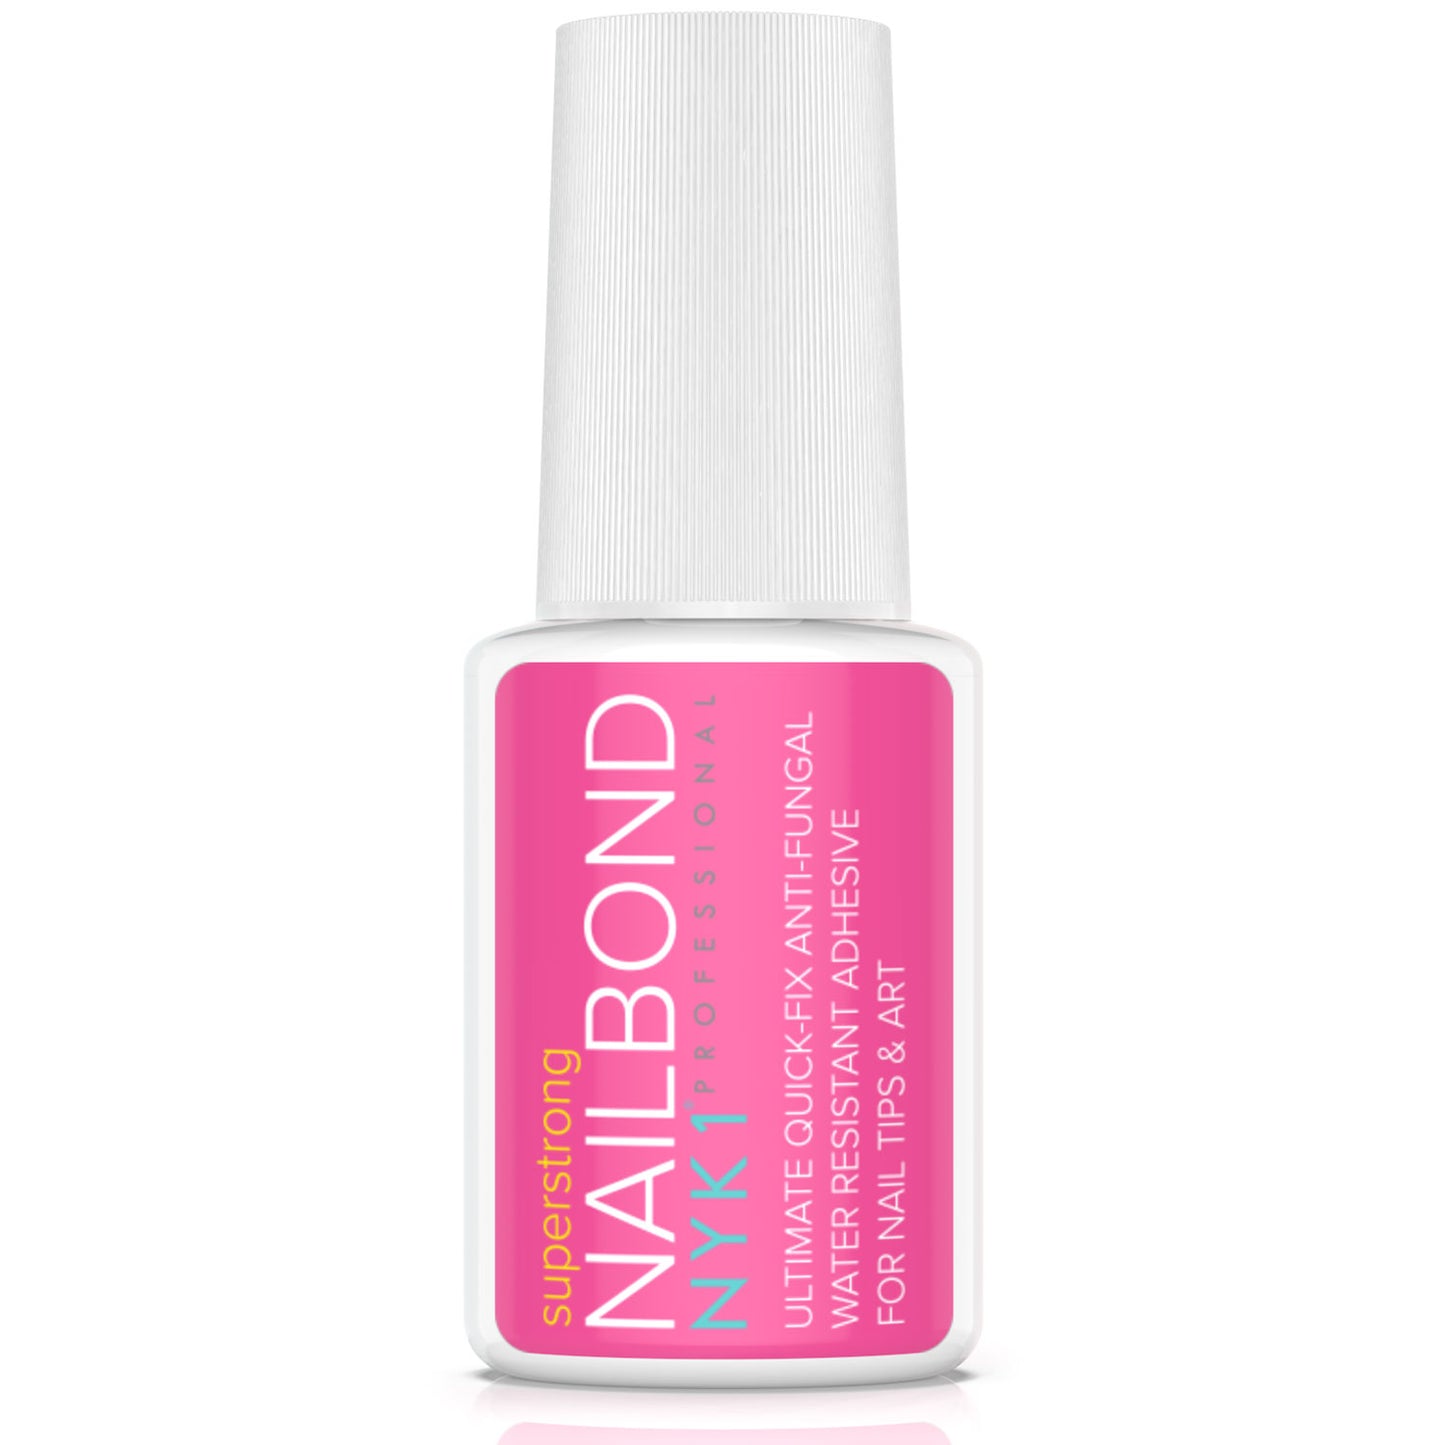 NYK1 NailBond Strong Nail Glue